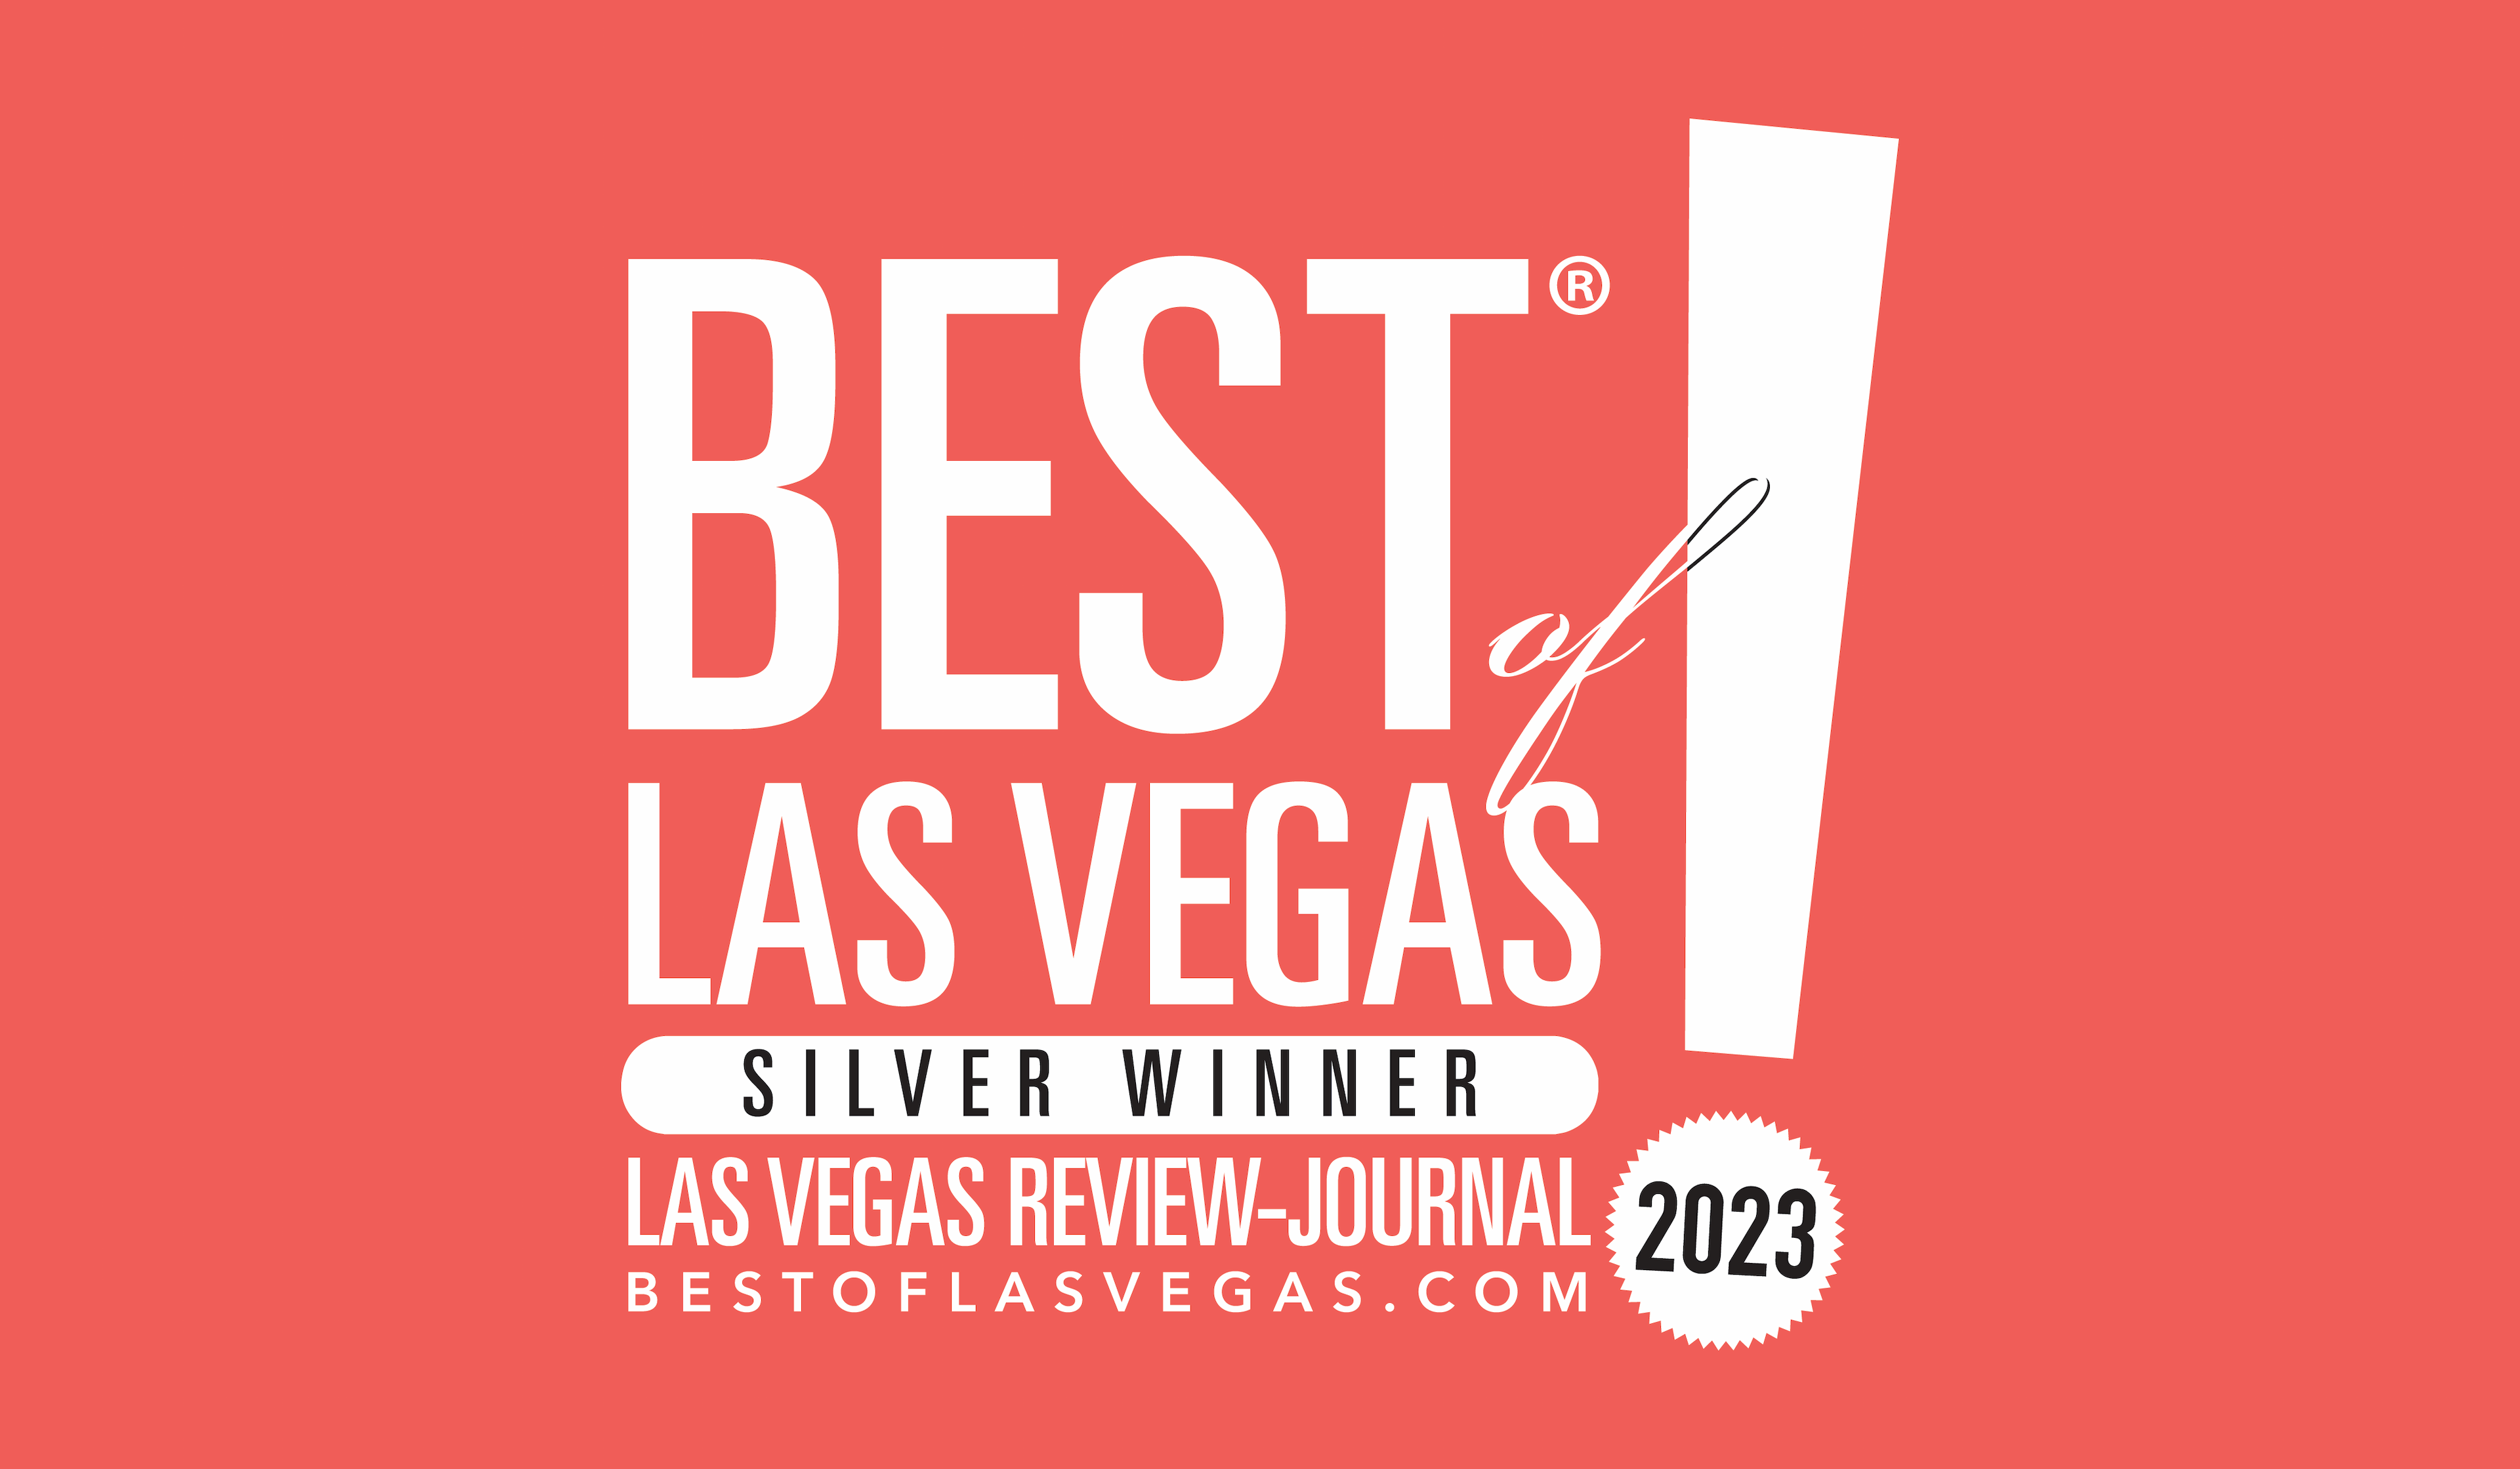 Best of Las Vegas Silver Winner